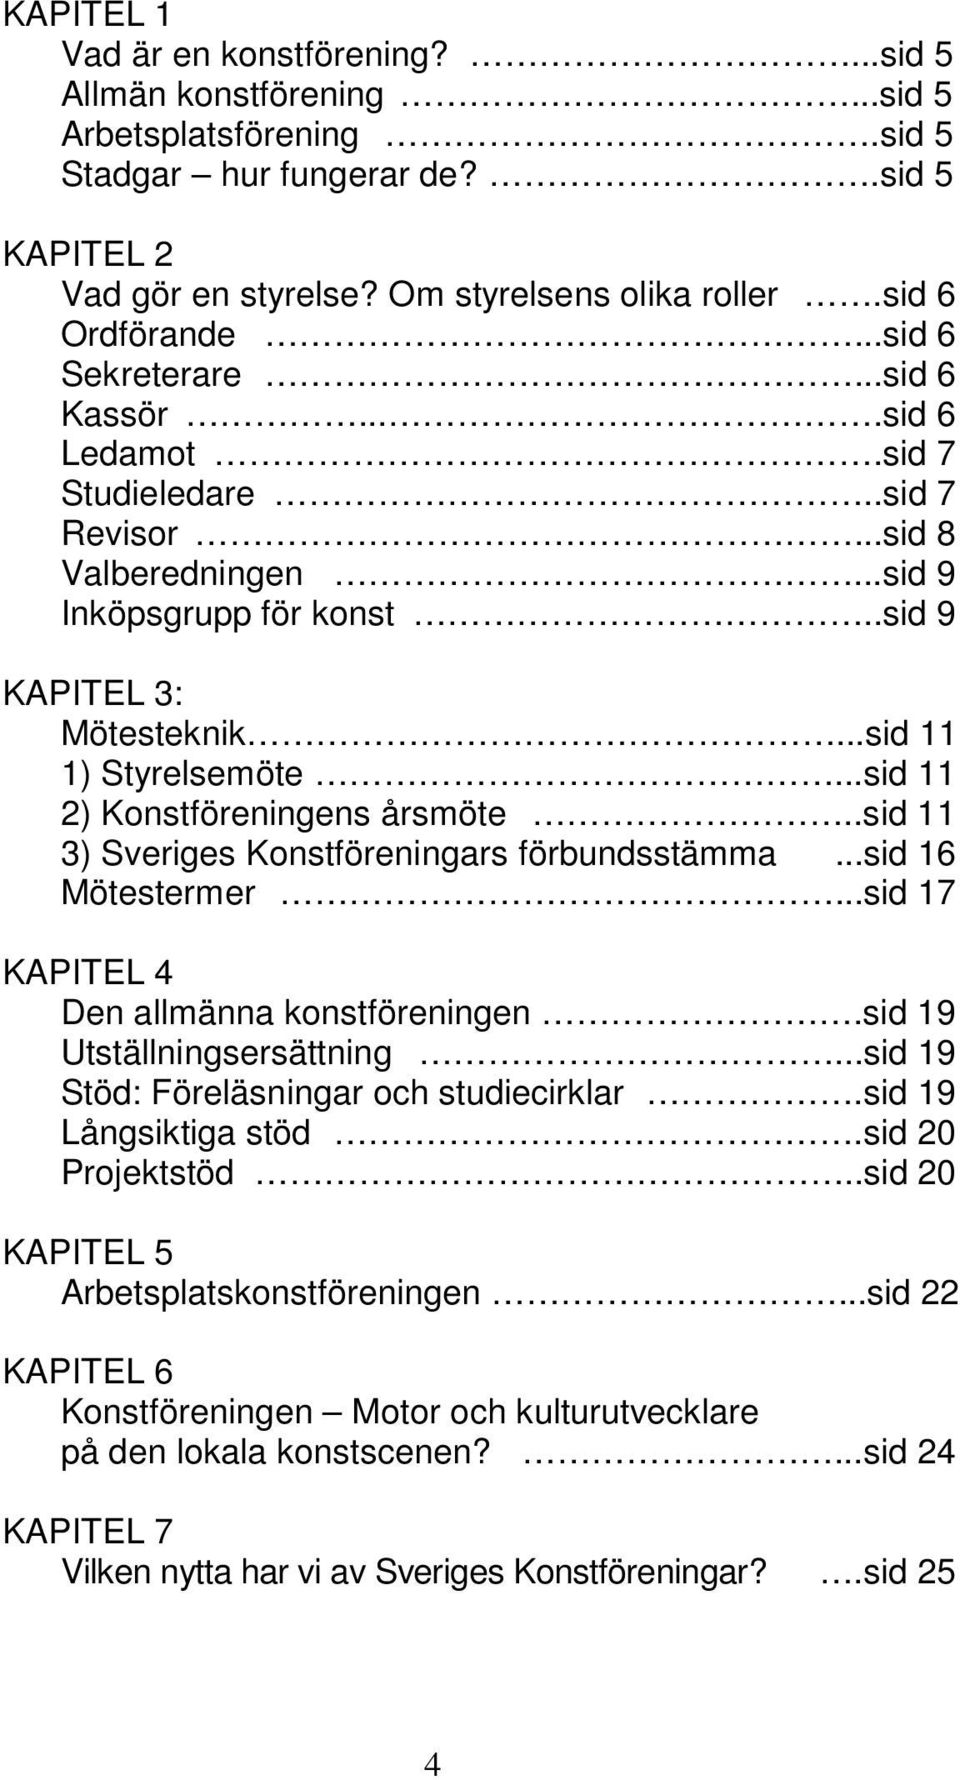 ..sid 11 1) Styrelsemöte...sid 11 2) Konstföreningens årsmöte..sid 11 3) Sveriges Konstföreningars förbundsstämma...sid 16 Mötestermer...sid 17 KAPITEL 4 Den allmänna konstföreningen.